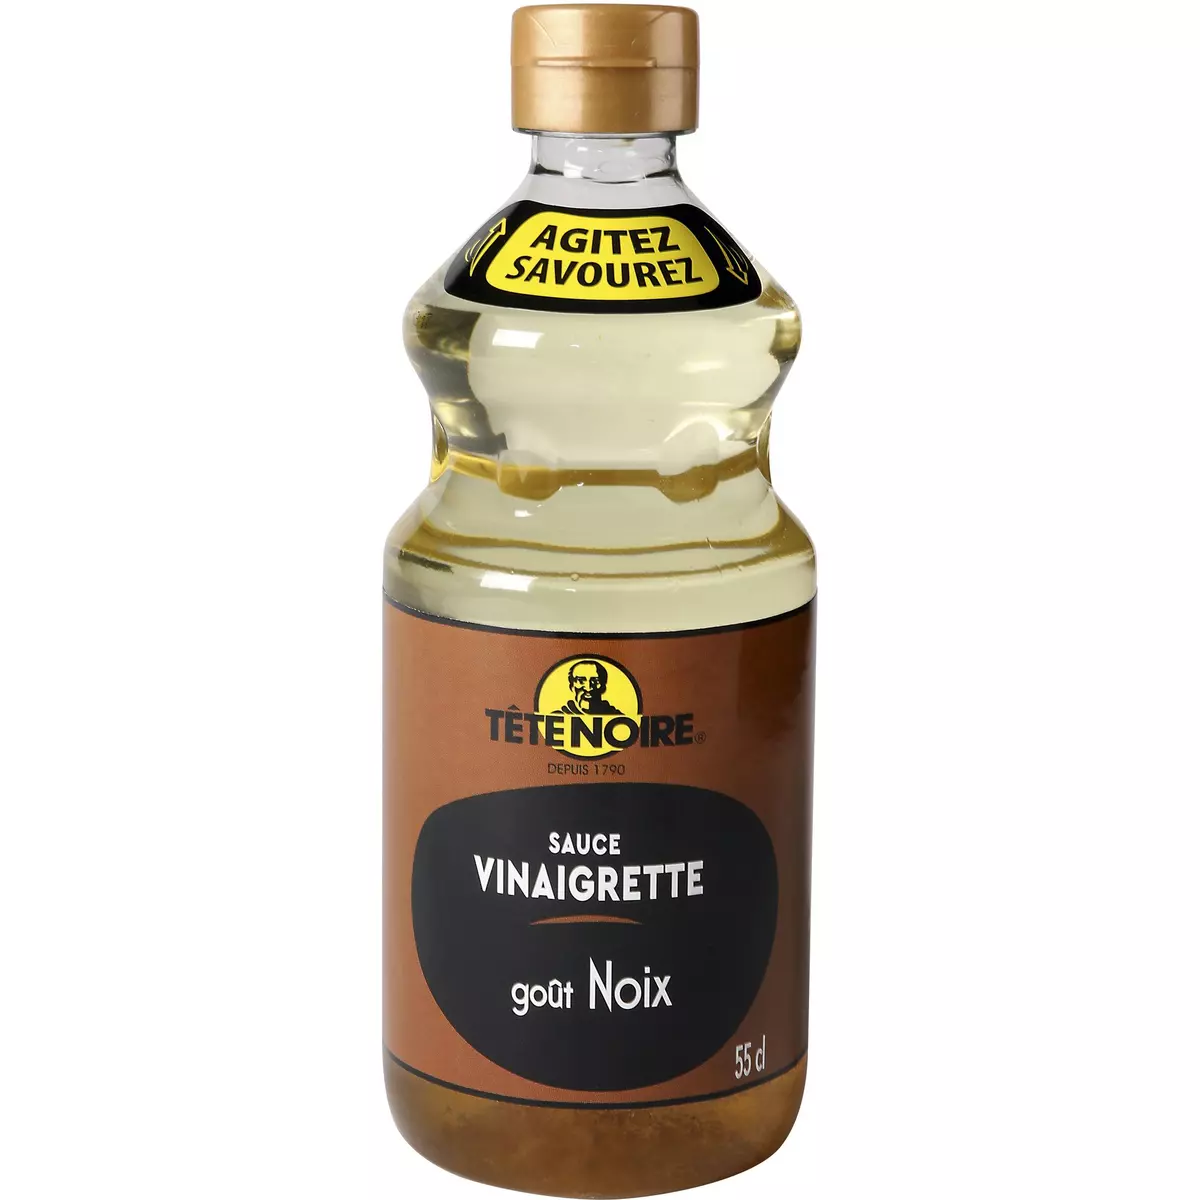 TETE NOIRE Sauce Vinaigrette goût noix 55cl